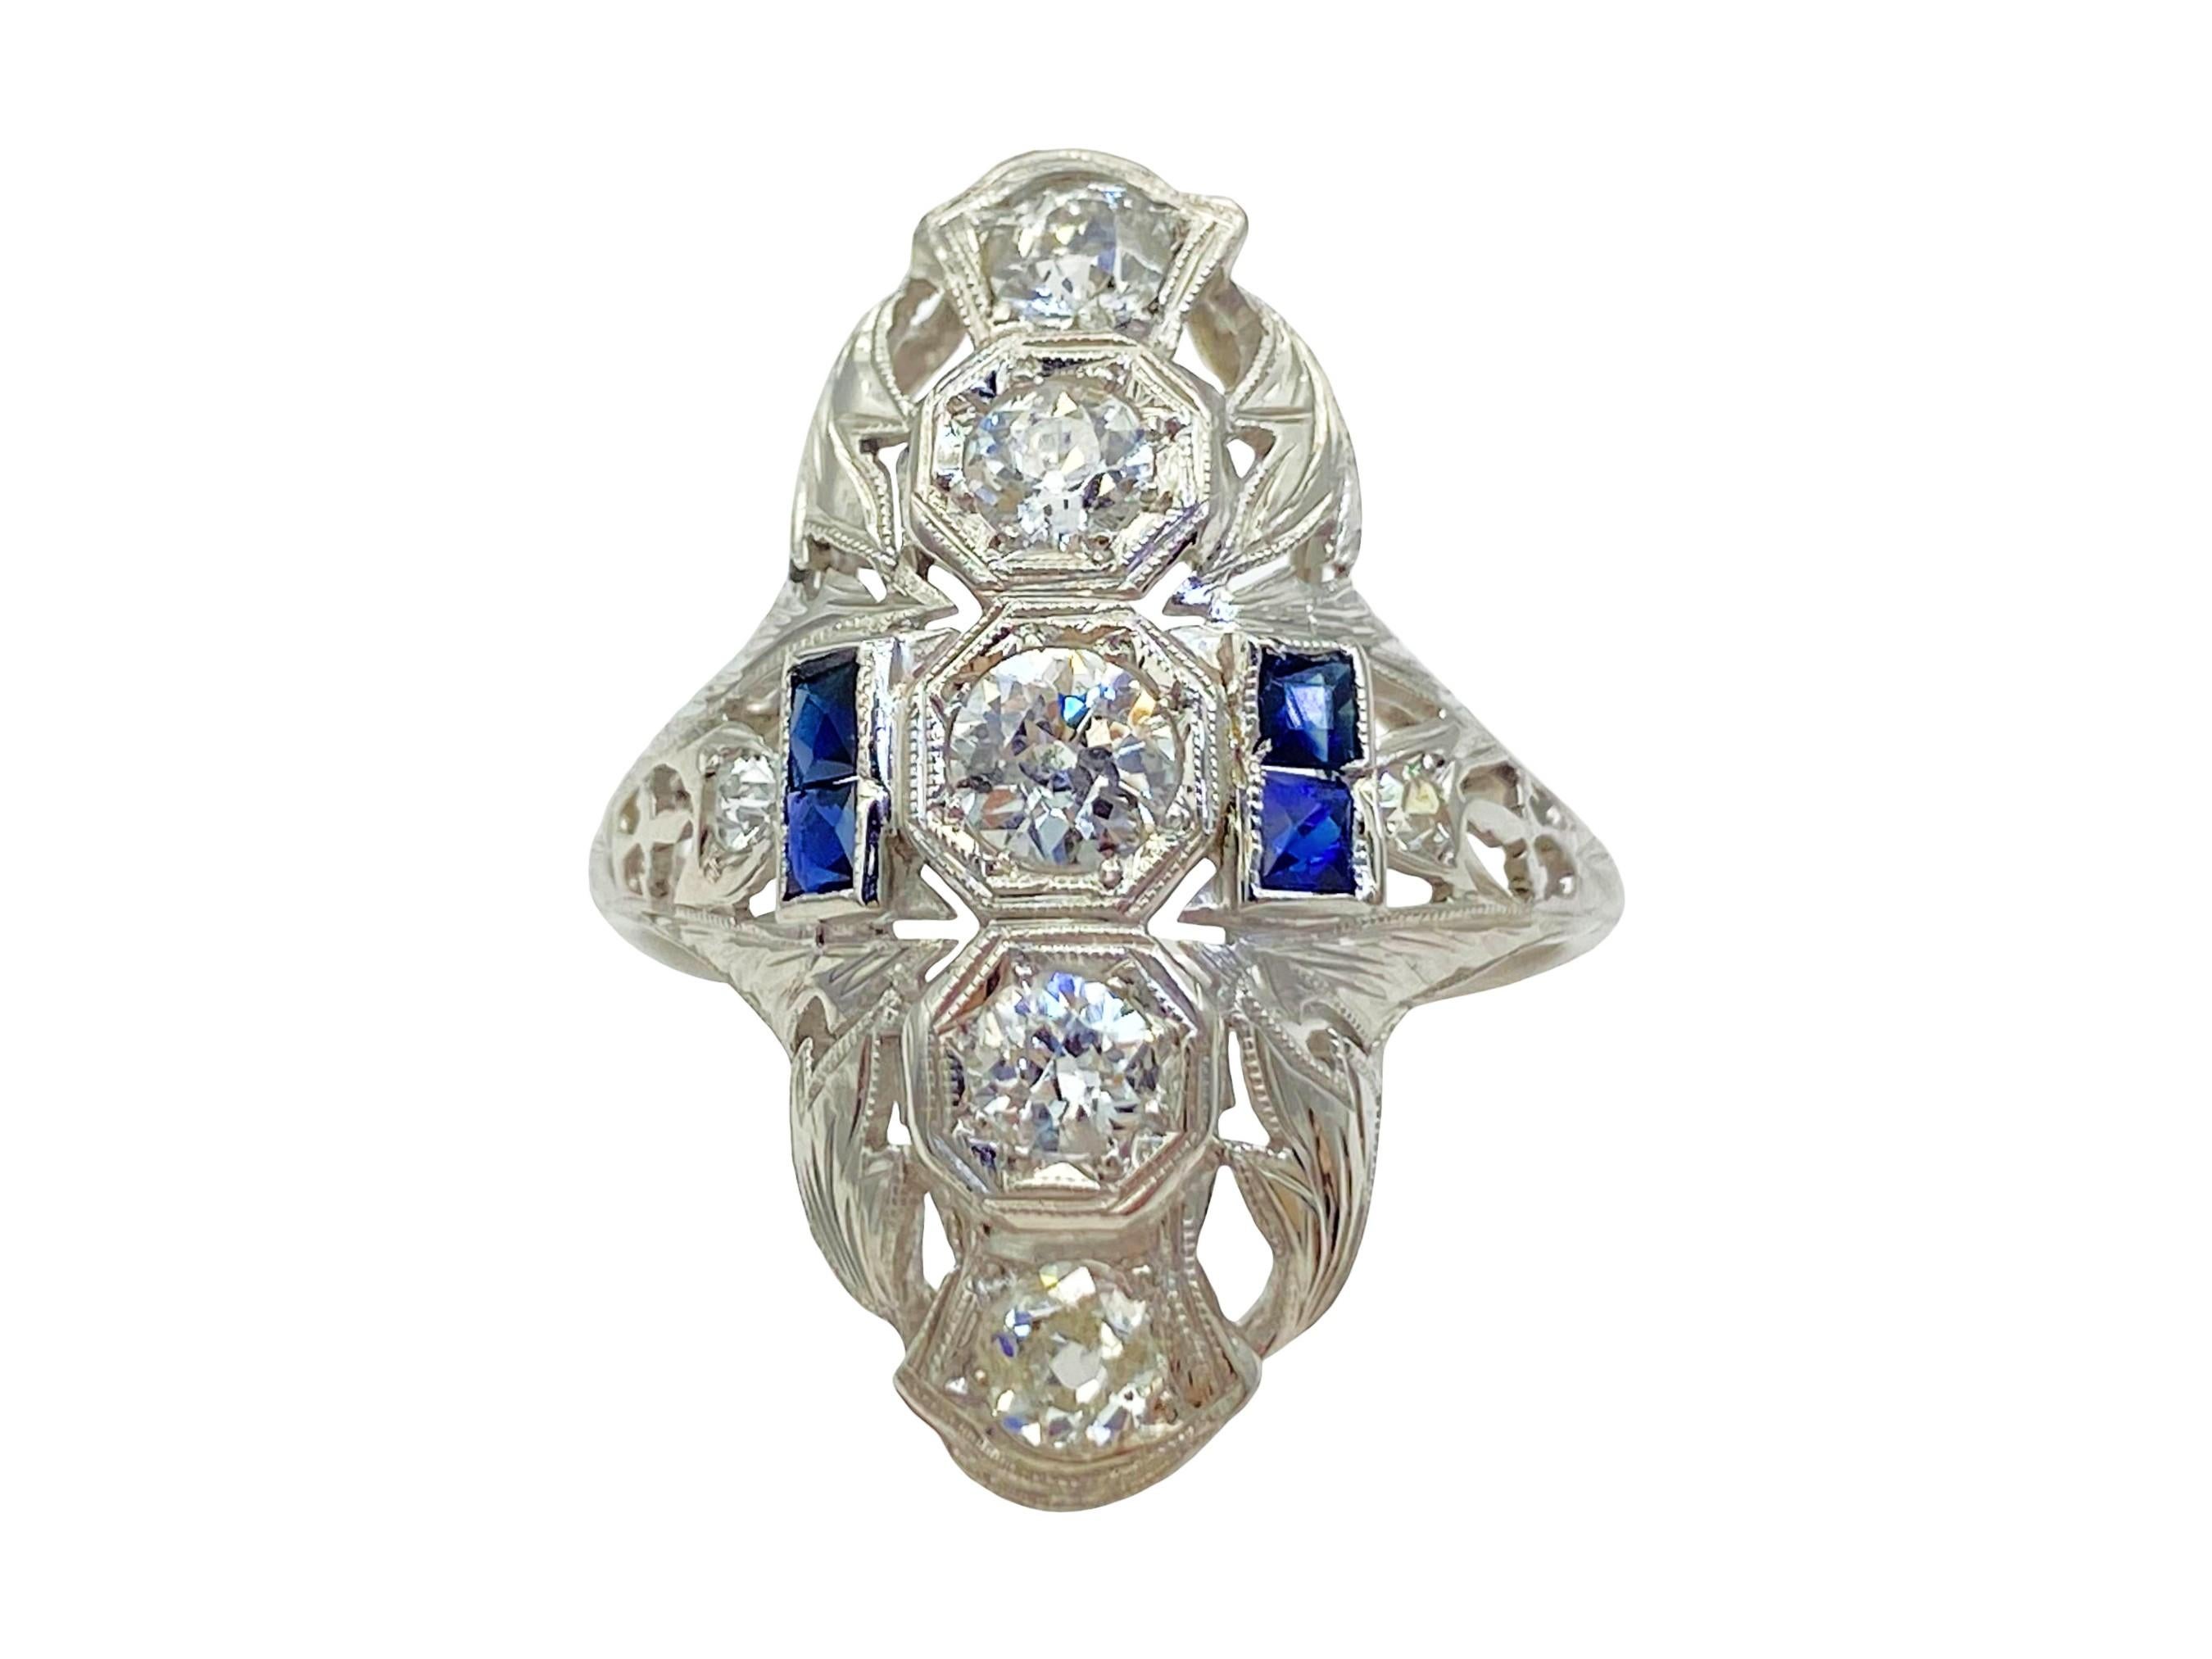 Il s'agit d'une bague ancienne en diamant et saphir naturel de style Arte Antiques, datant des années 1920. Cette magnifique bague est composée de 7 diamants et de 4 saphirs bleus naturels. Cinq diamants de taille européenne ancienne sont sertis